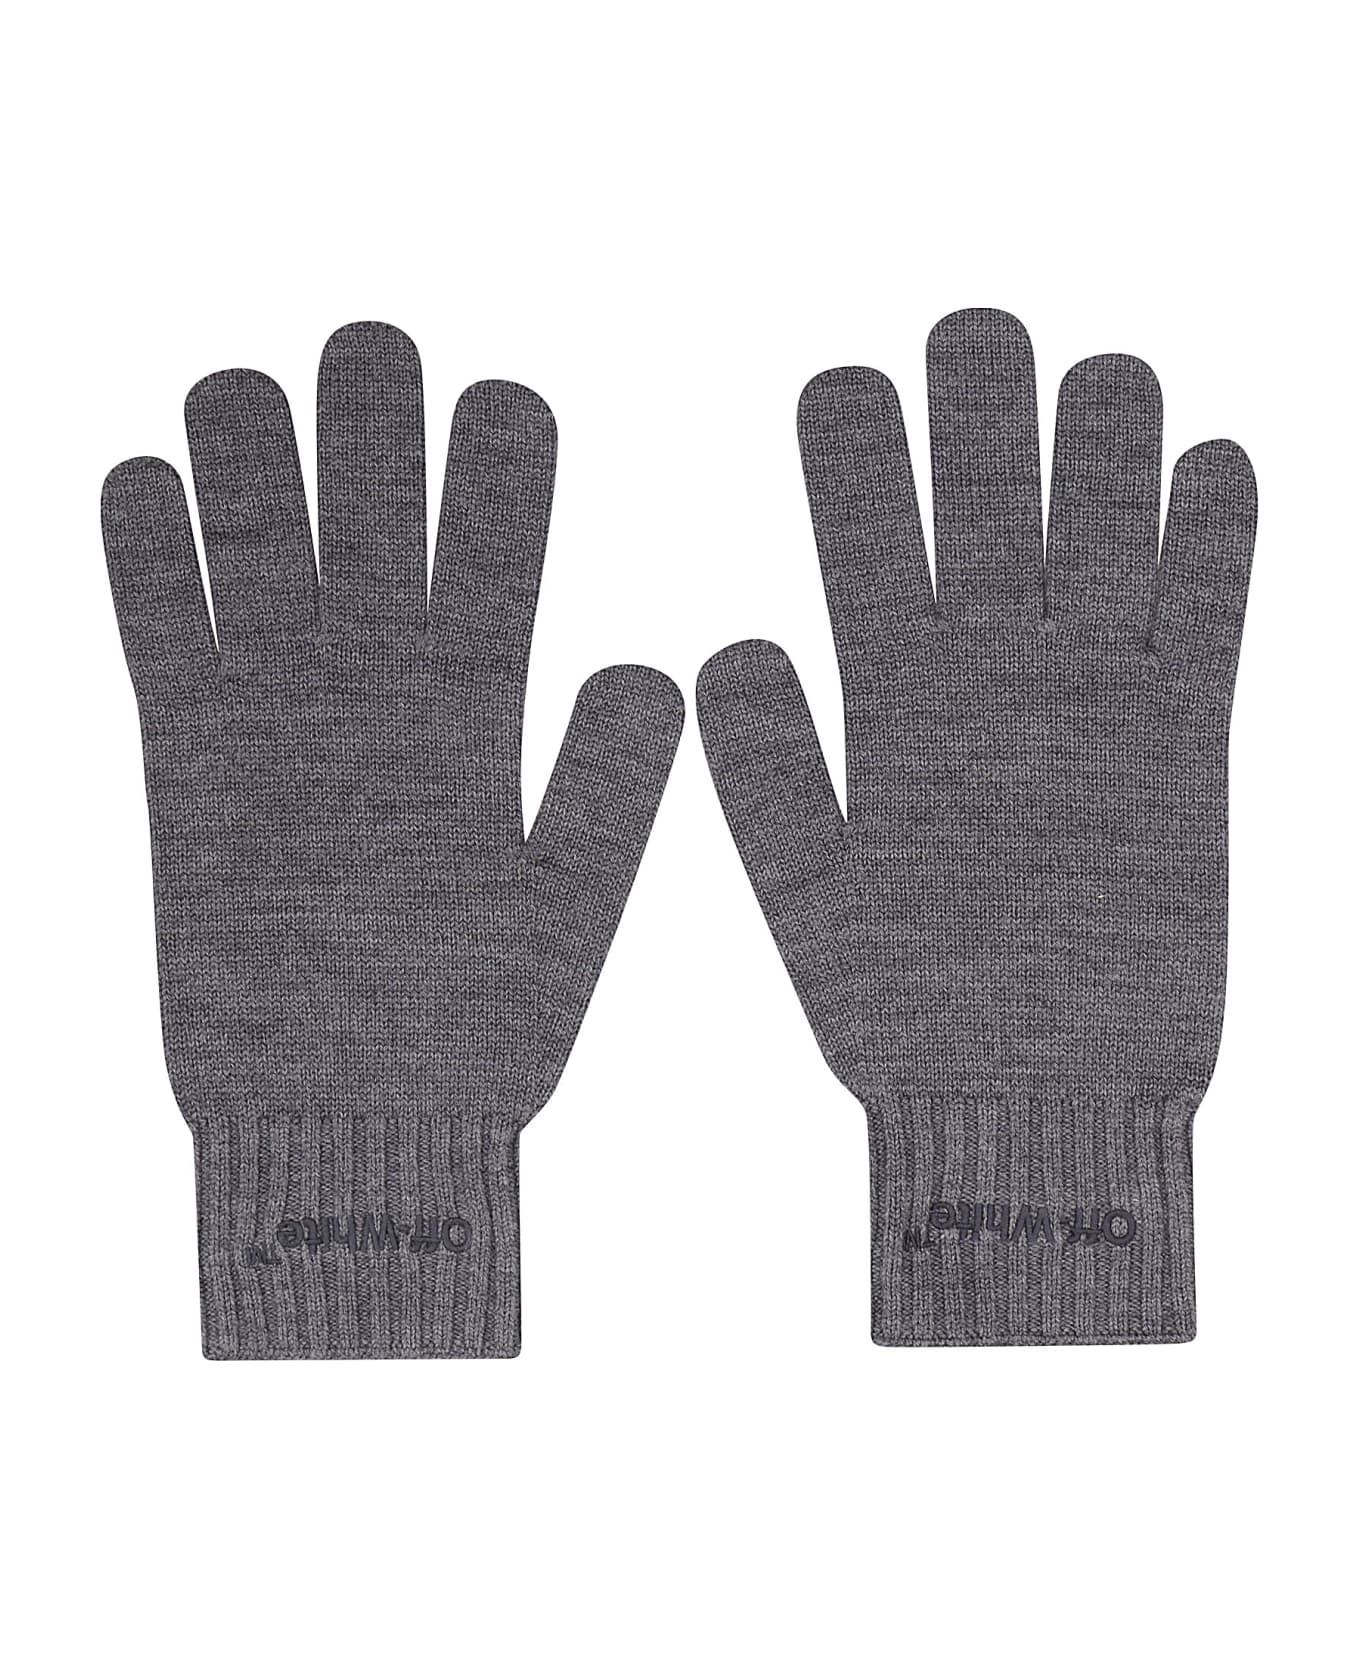 Off-White Helvet Knit Gloves Medium - Medium Grey  Medium Grey